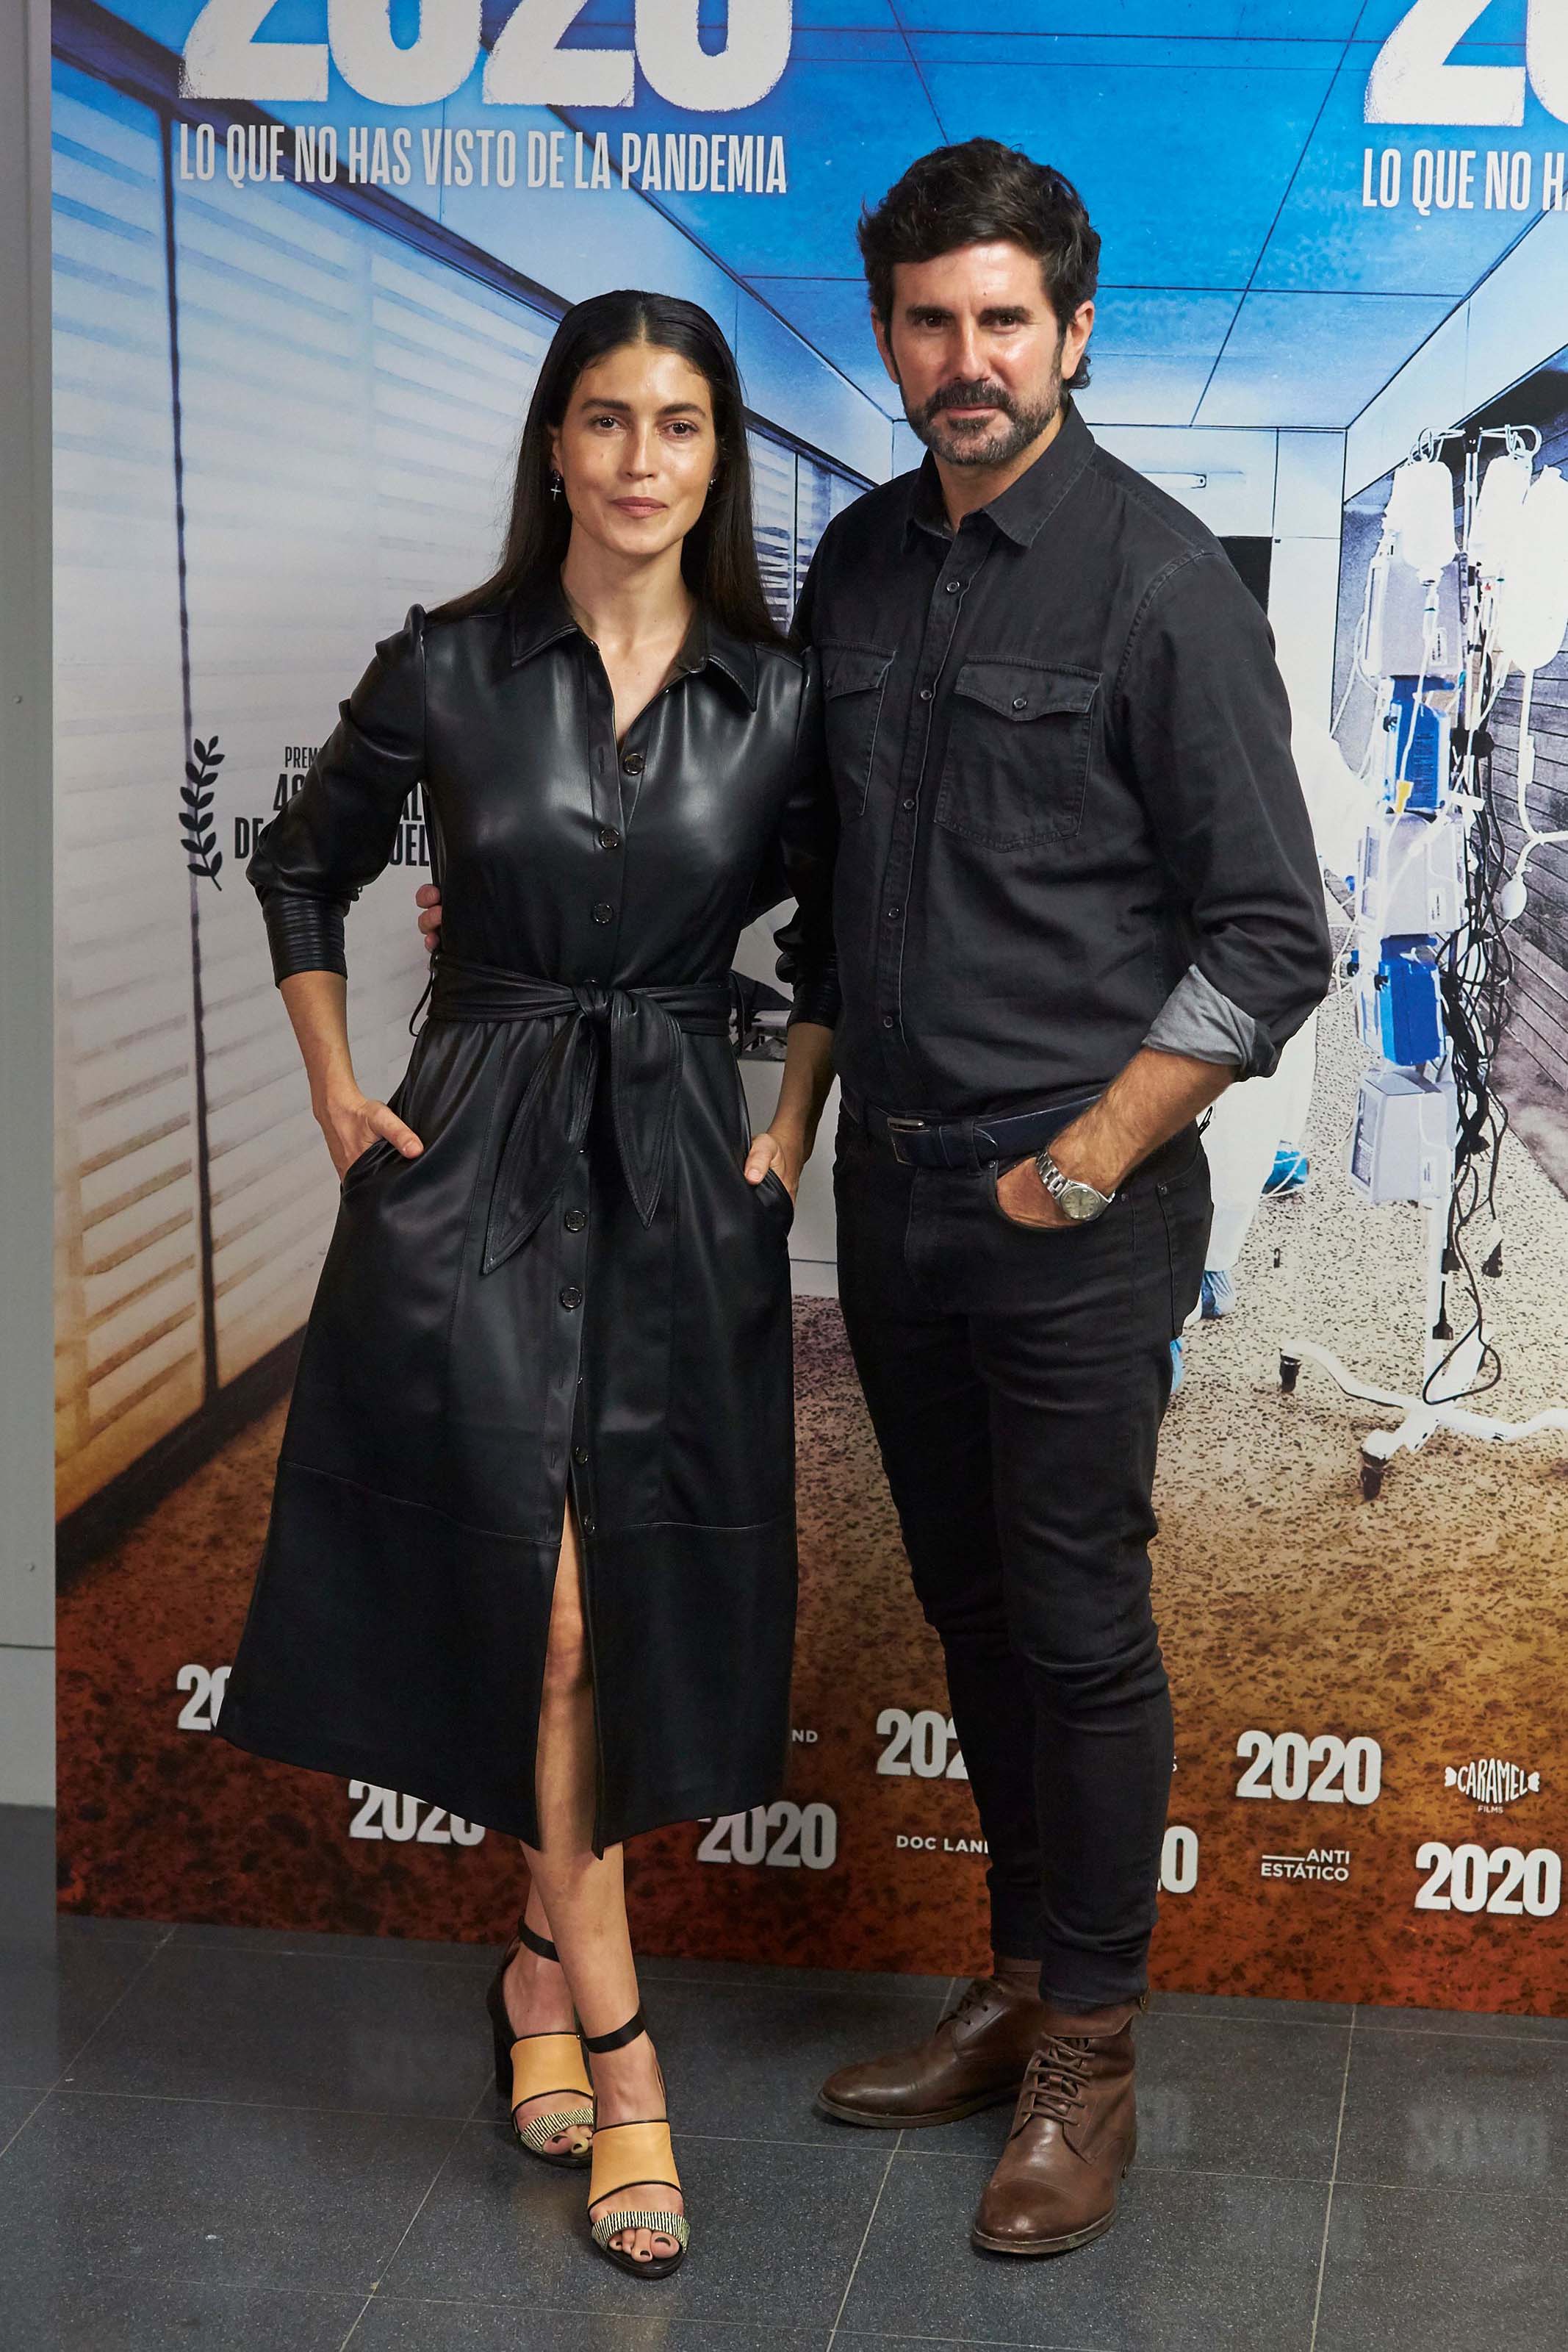 Nerea Barros attends 2020 Film Premiere at Wizink Center, Madrid